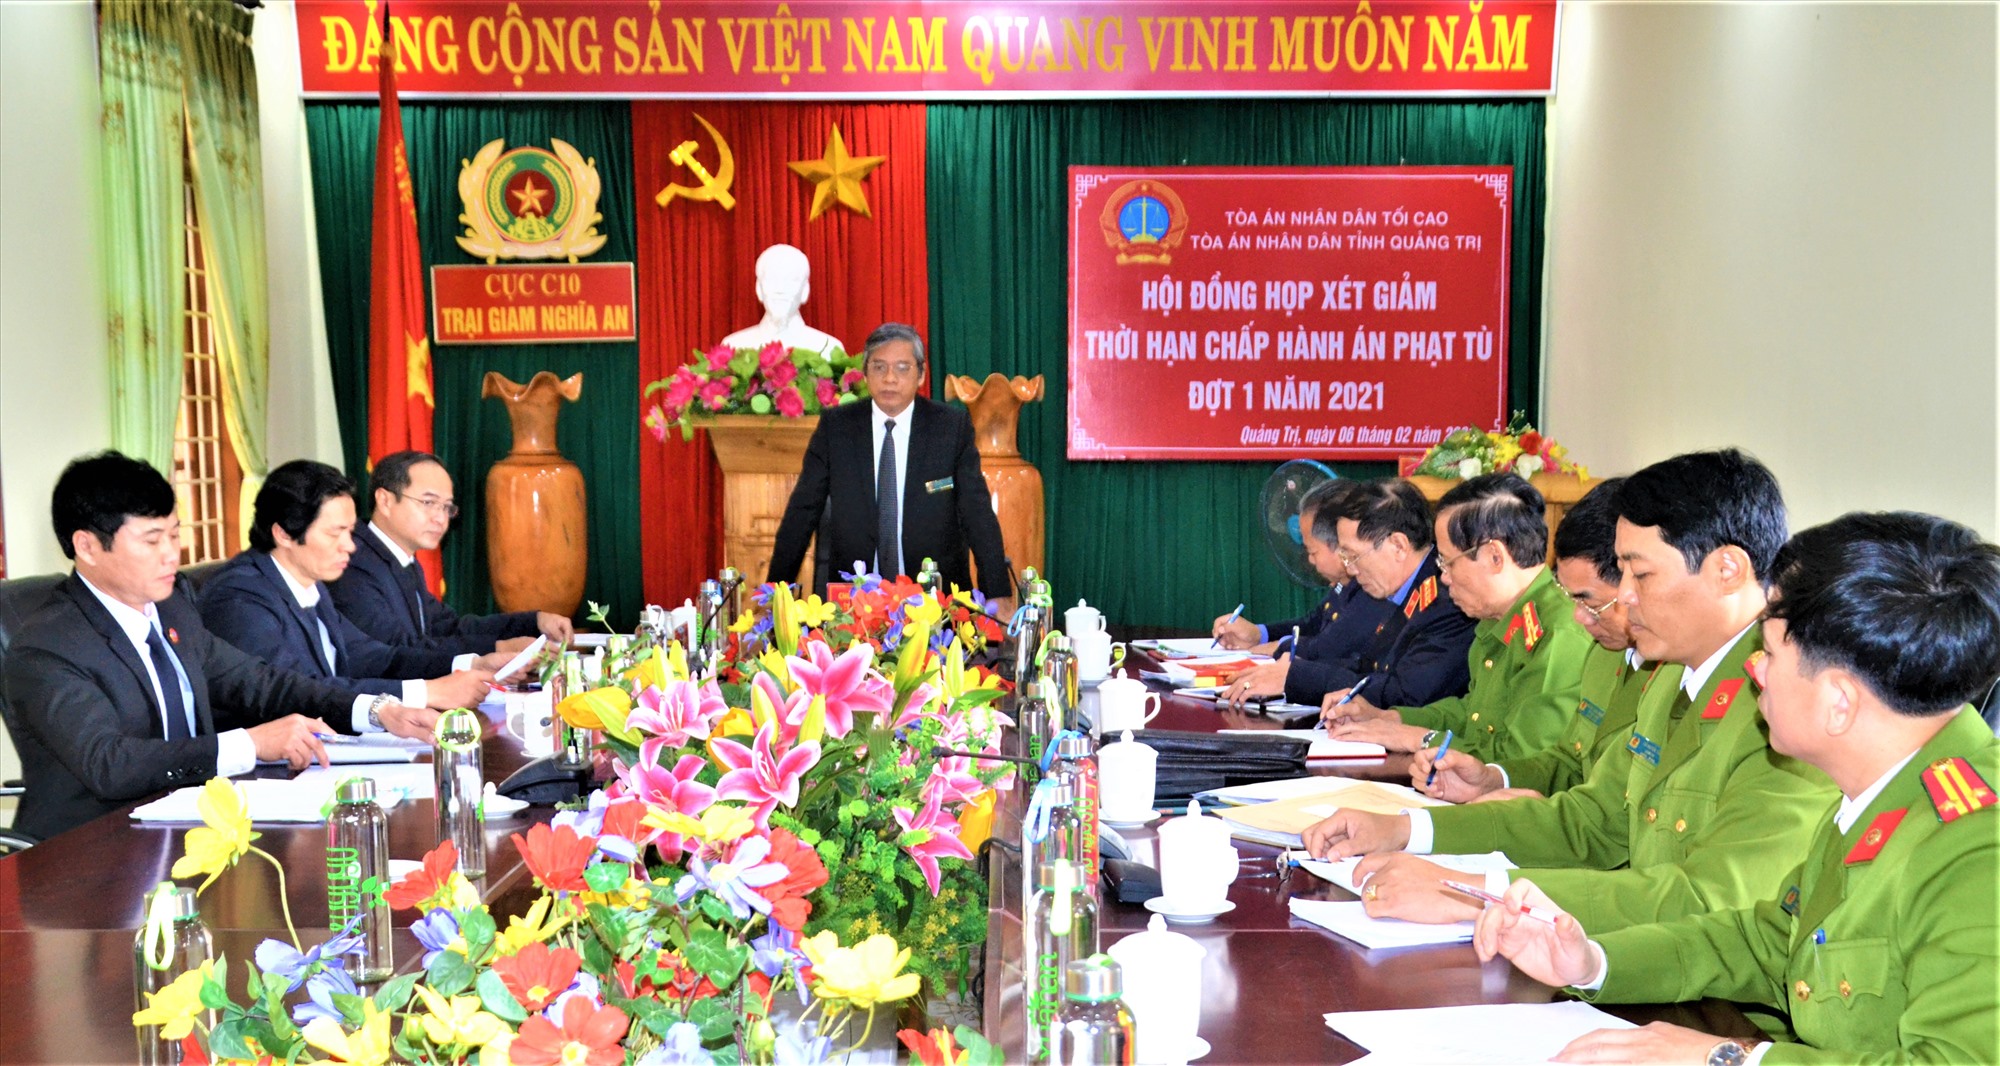 Chánh án TAND tỉnh, Chủ tịch Hội đồng xét giảm thời hạn chấp hành án phạt tù tỉnh Lê Hồng Quang đưa ra kết luận của hội đồng về giảm án - Ảnh: A.P